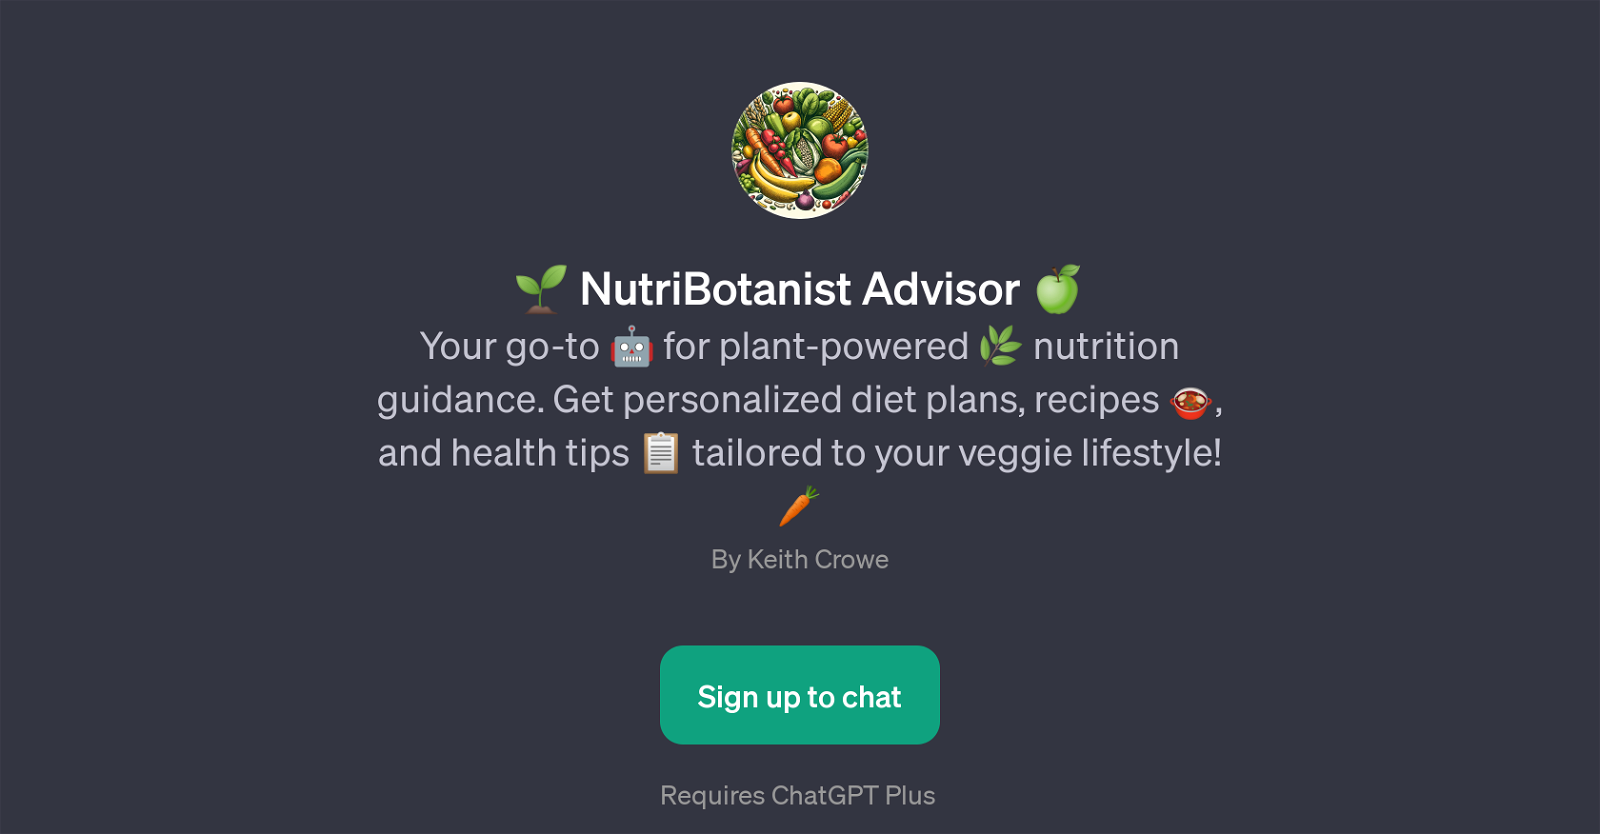 NutriBotanist Advisor website